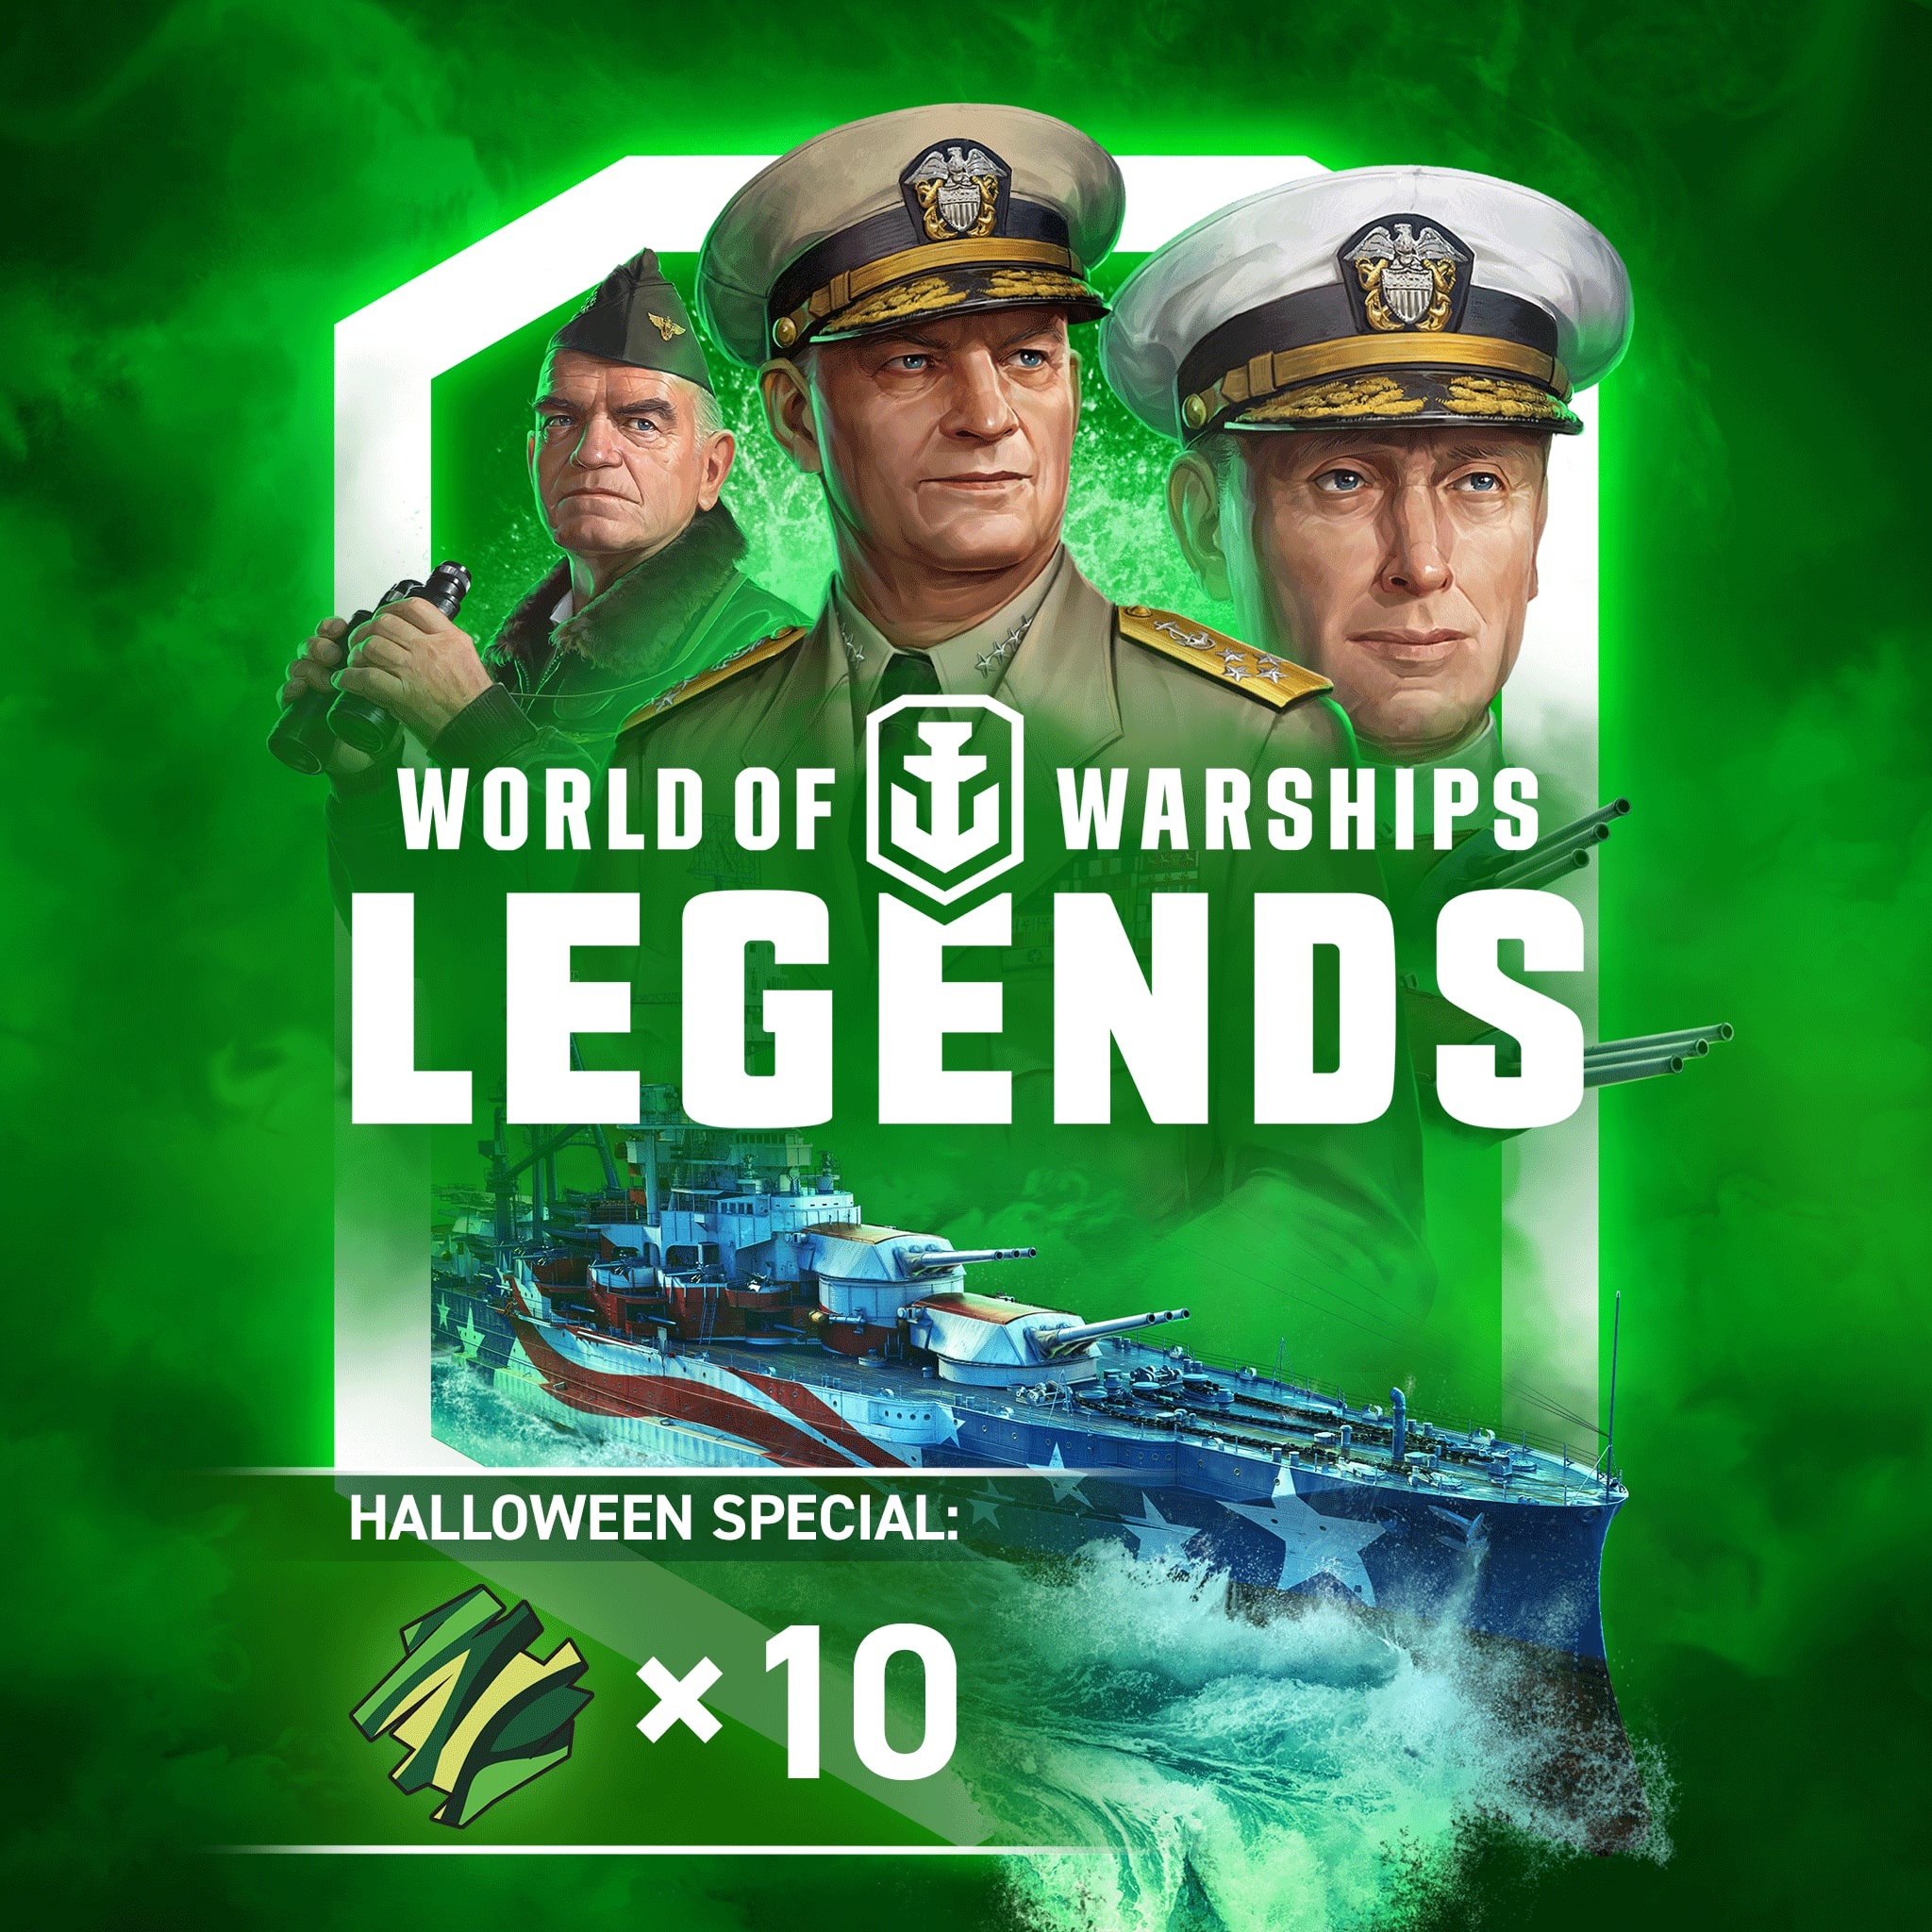 World of Warships: Legends —PS4 Puissance de l'Indépendance